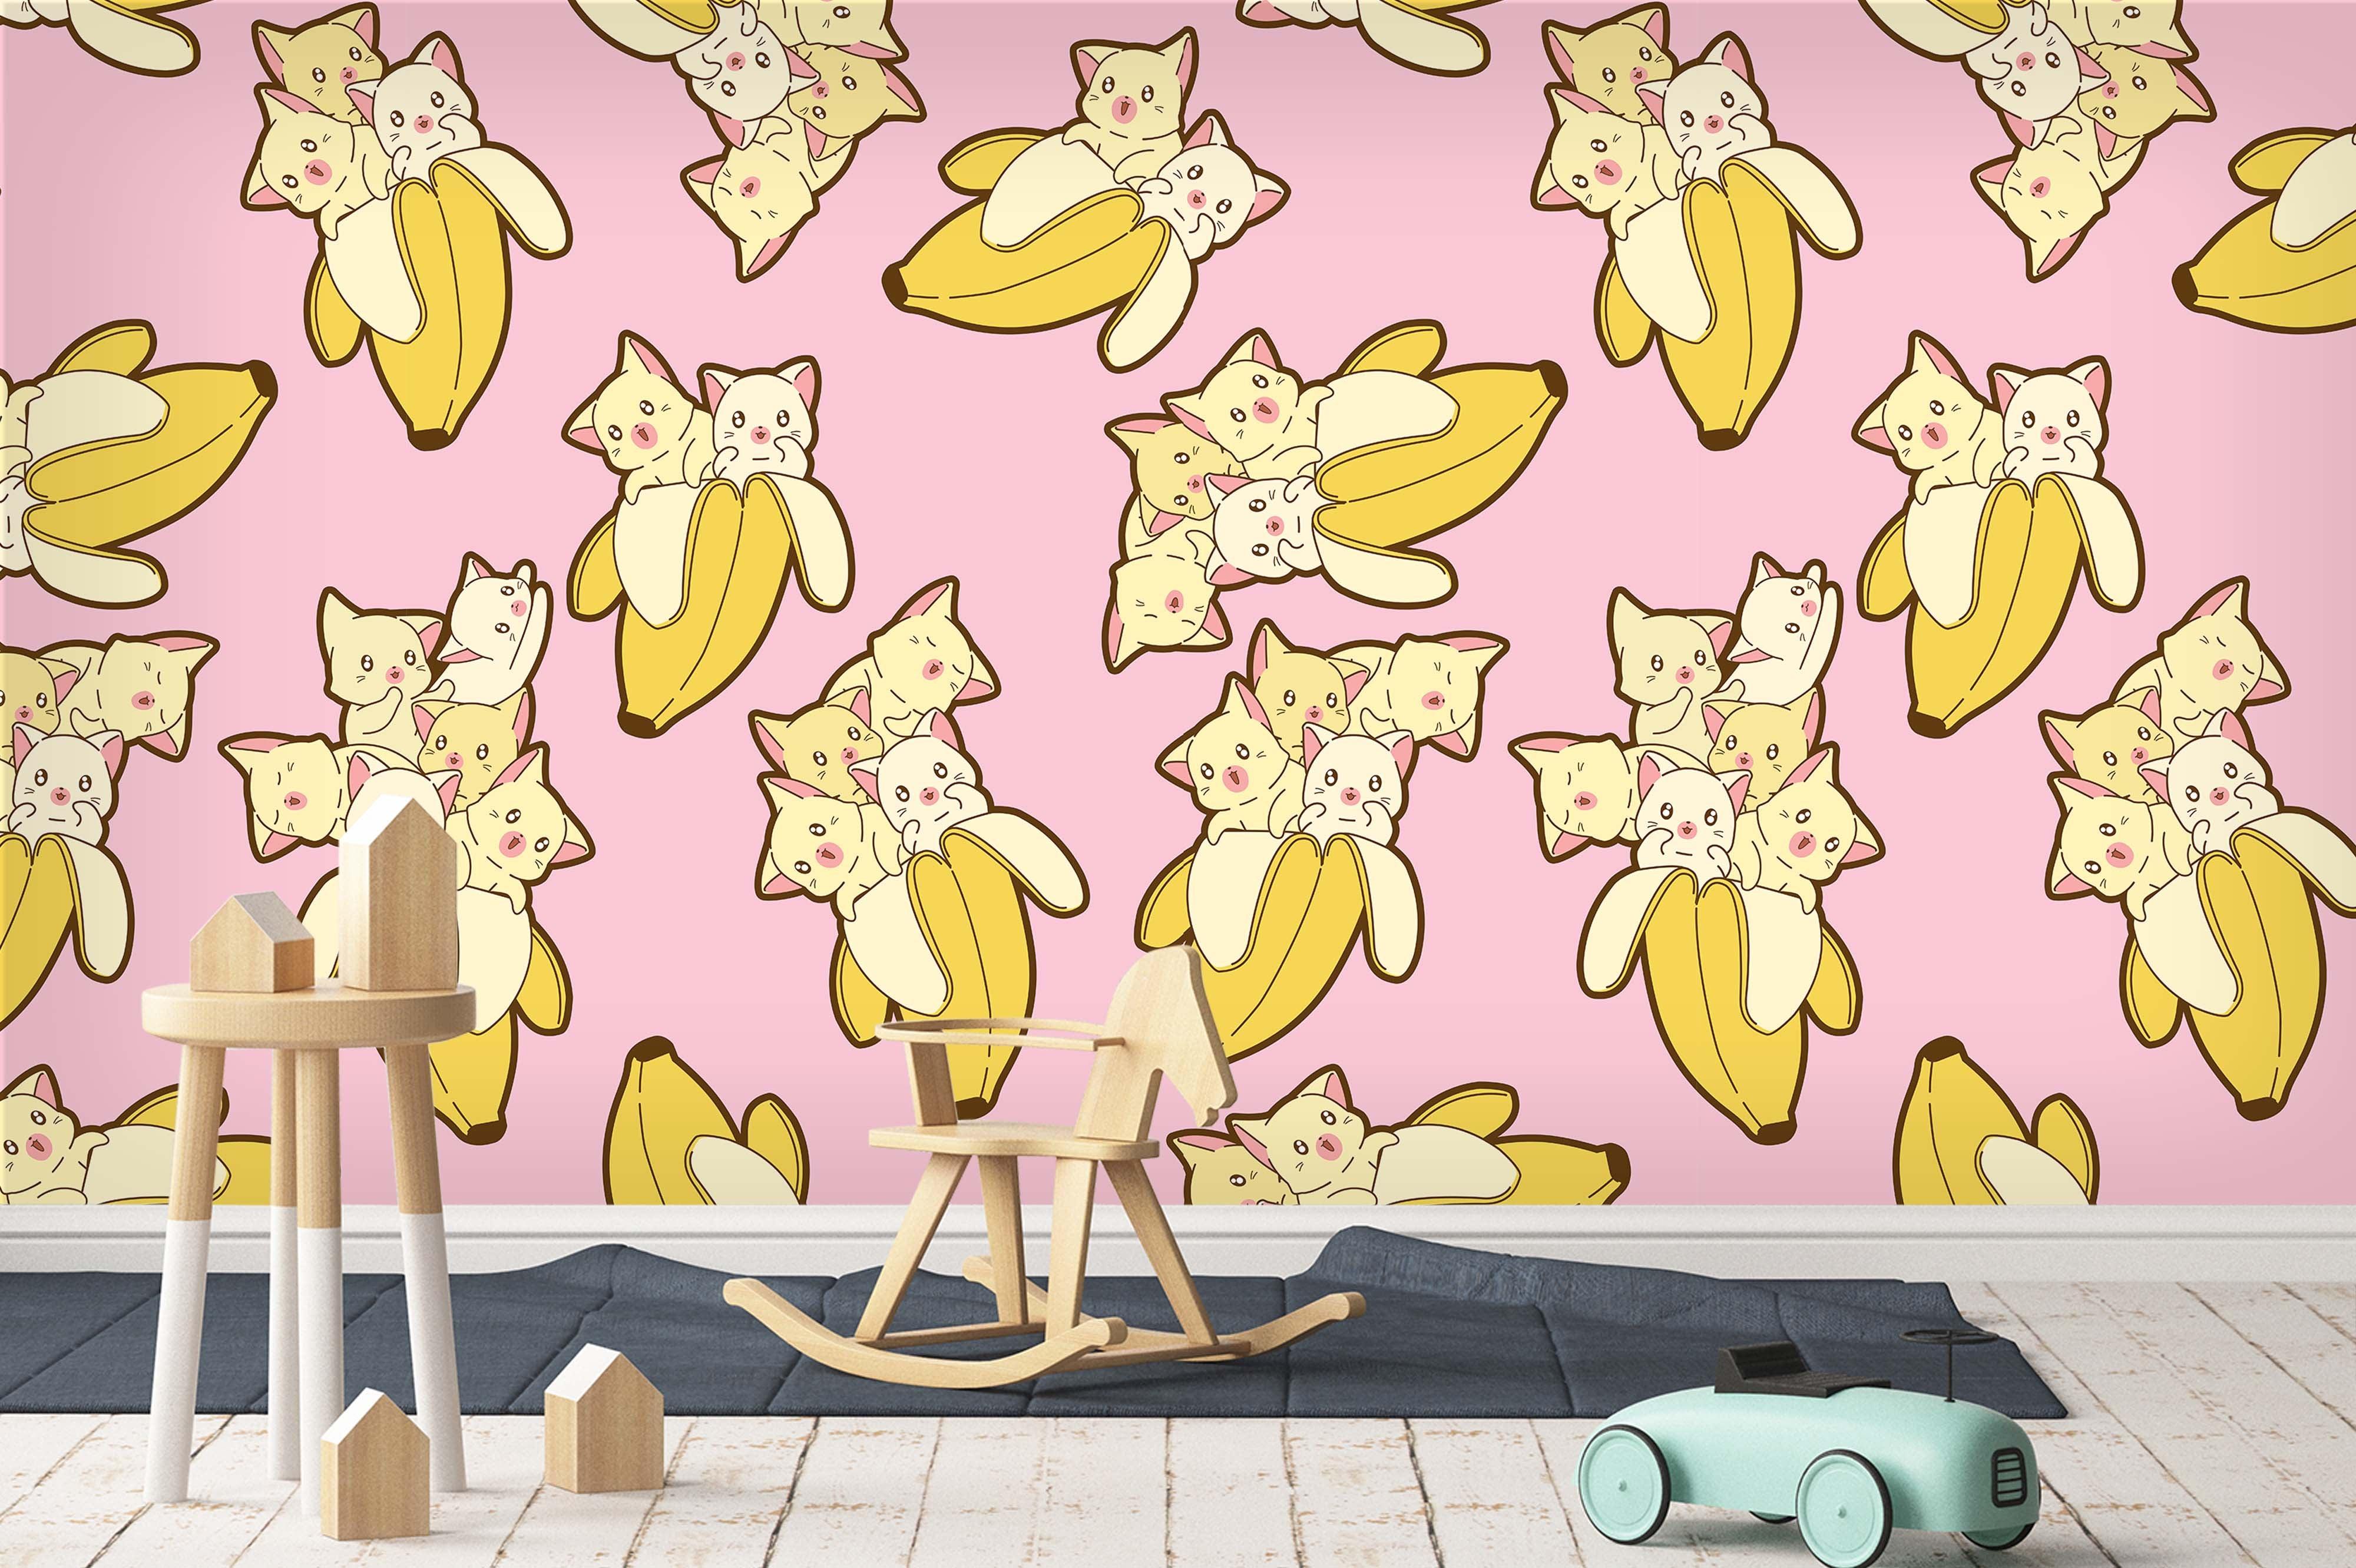 3D Puppy Dog Banana Wall Mural Wallpaper 33- Jess Art Decoration